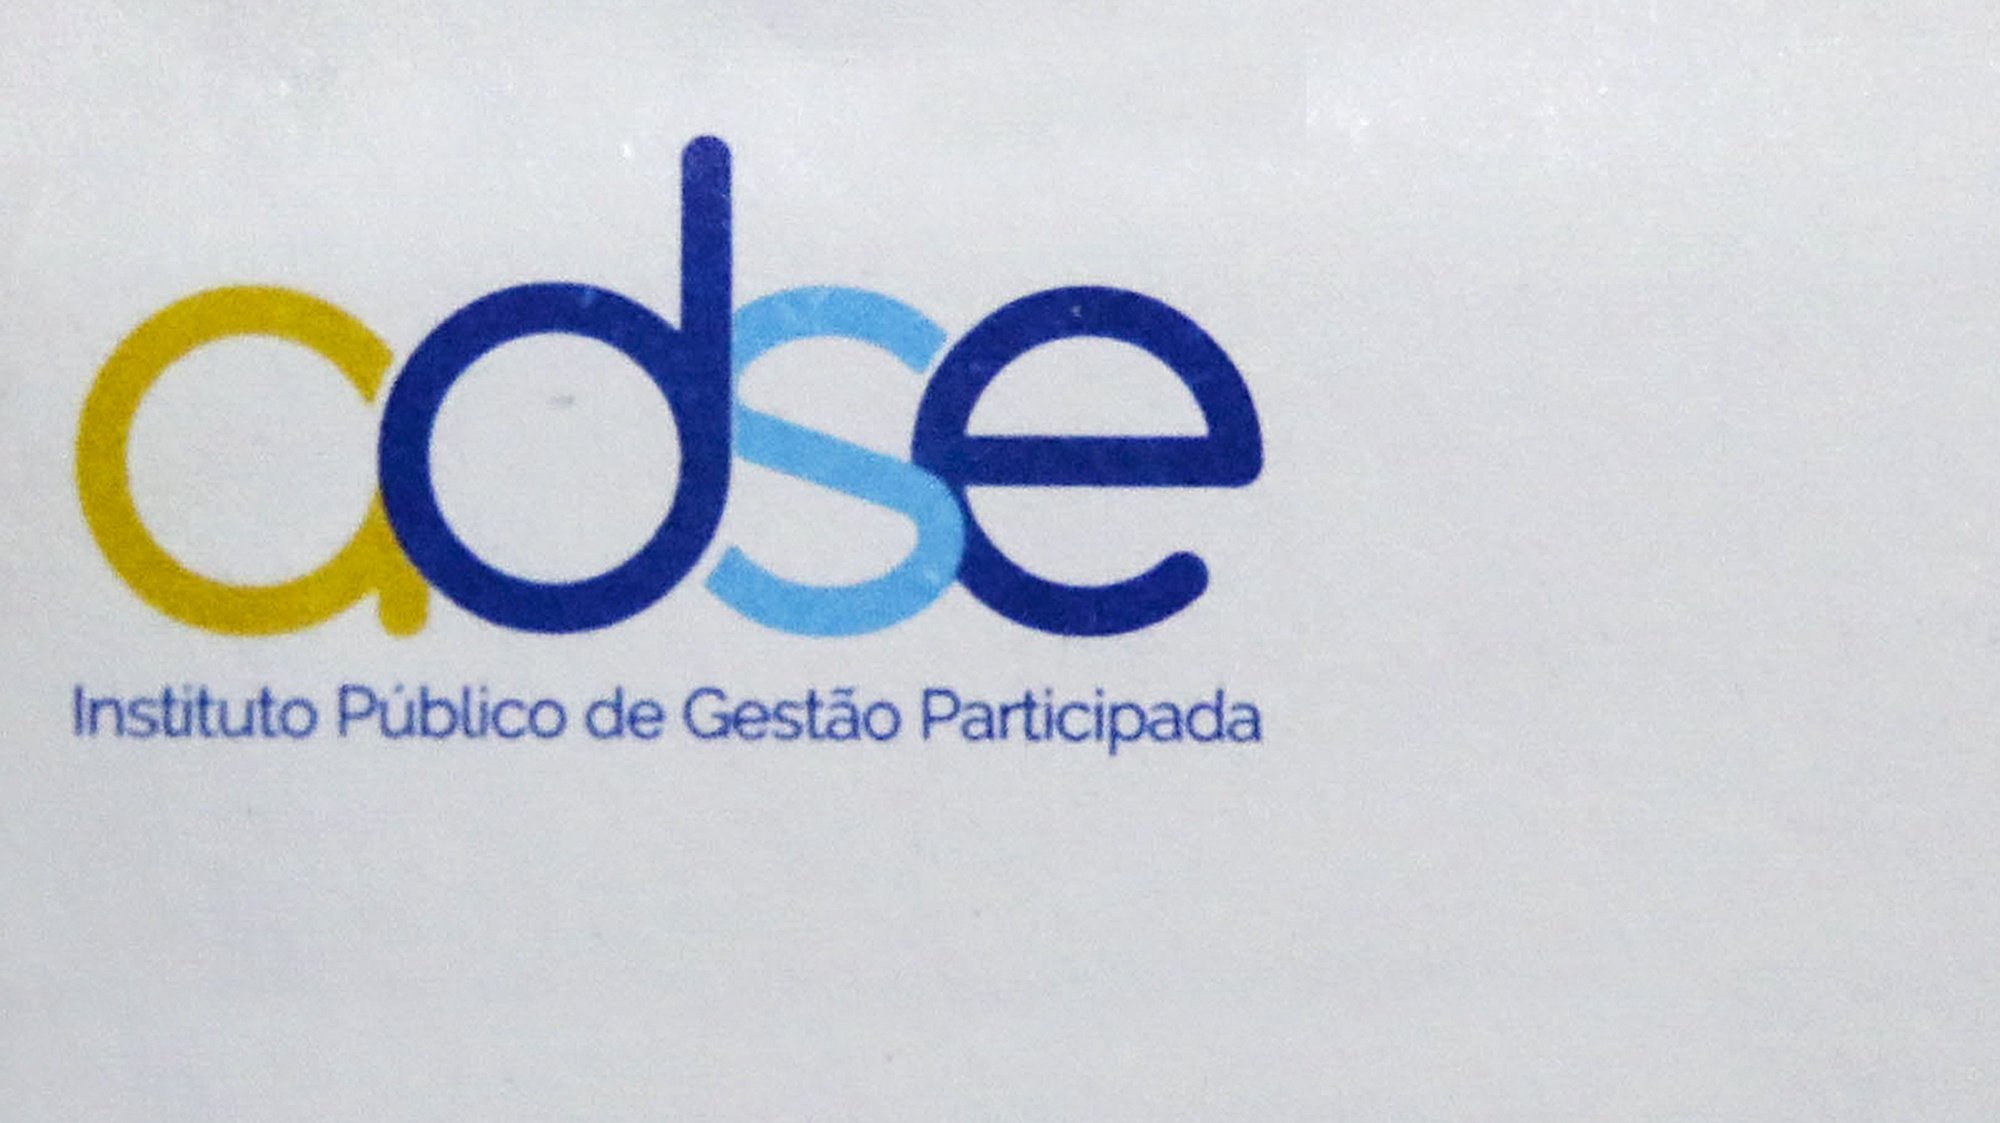 ADSE, Instituto Publico de Gestão Participada, 12 fevereiro 2019. LUSA